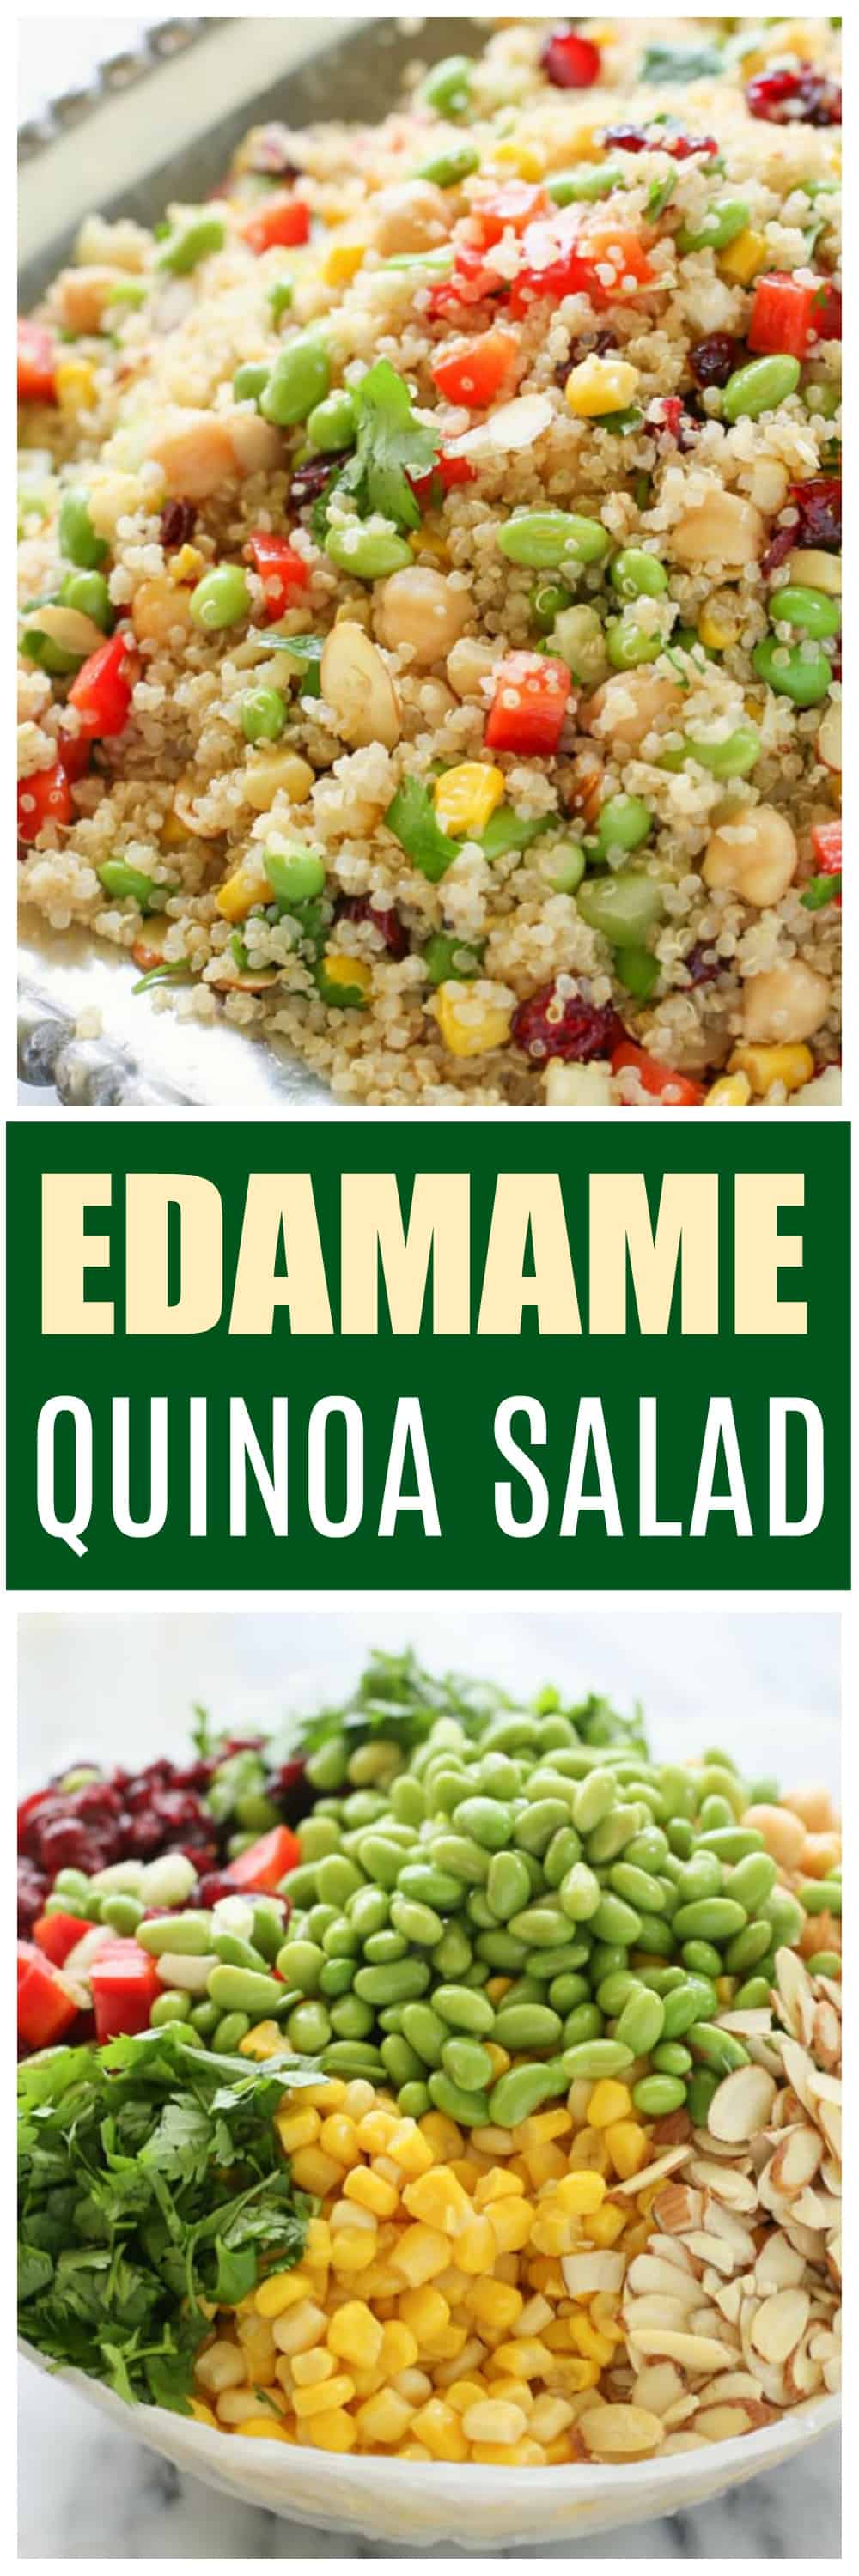 Edamame Quinoa Salad